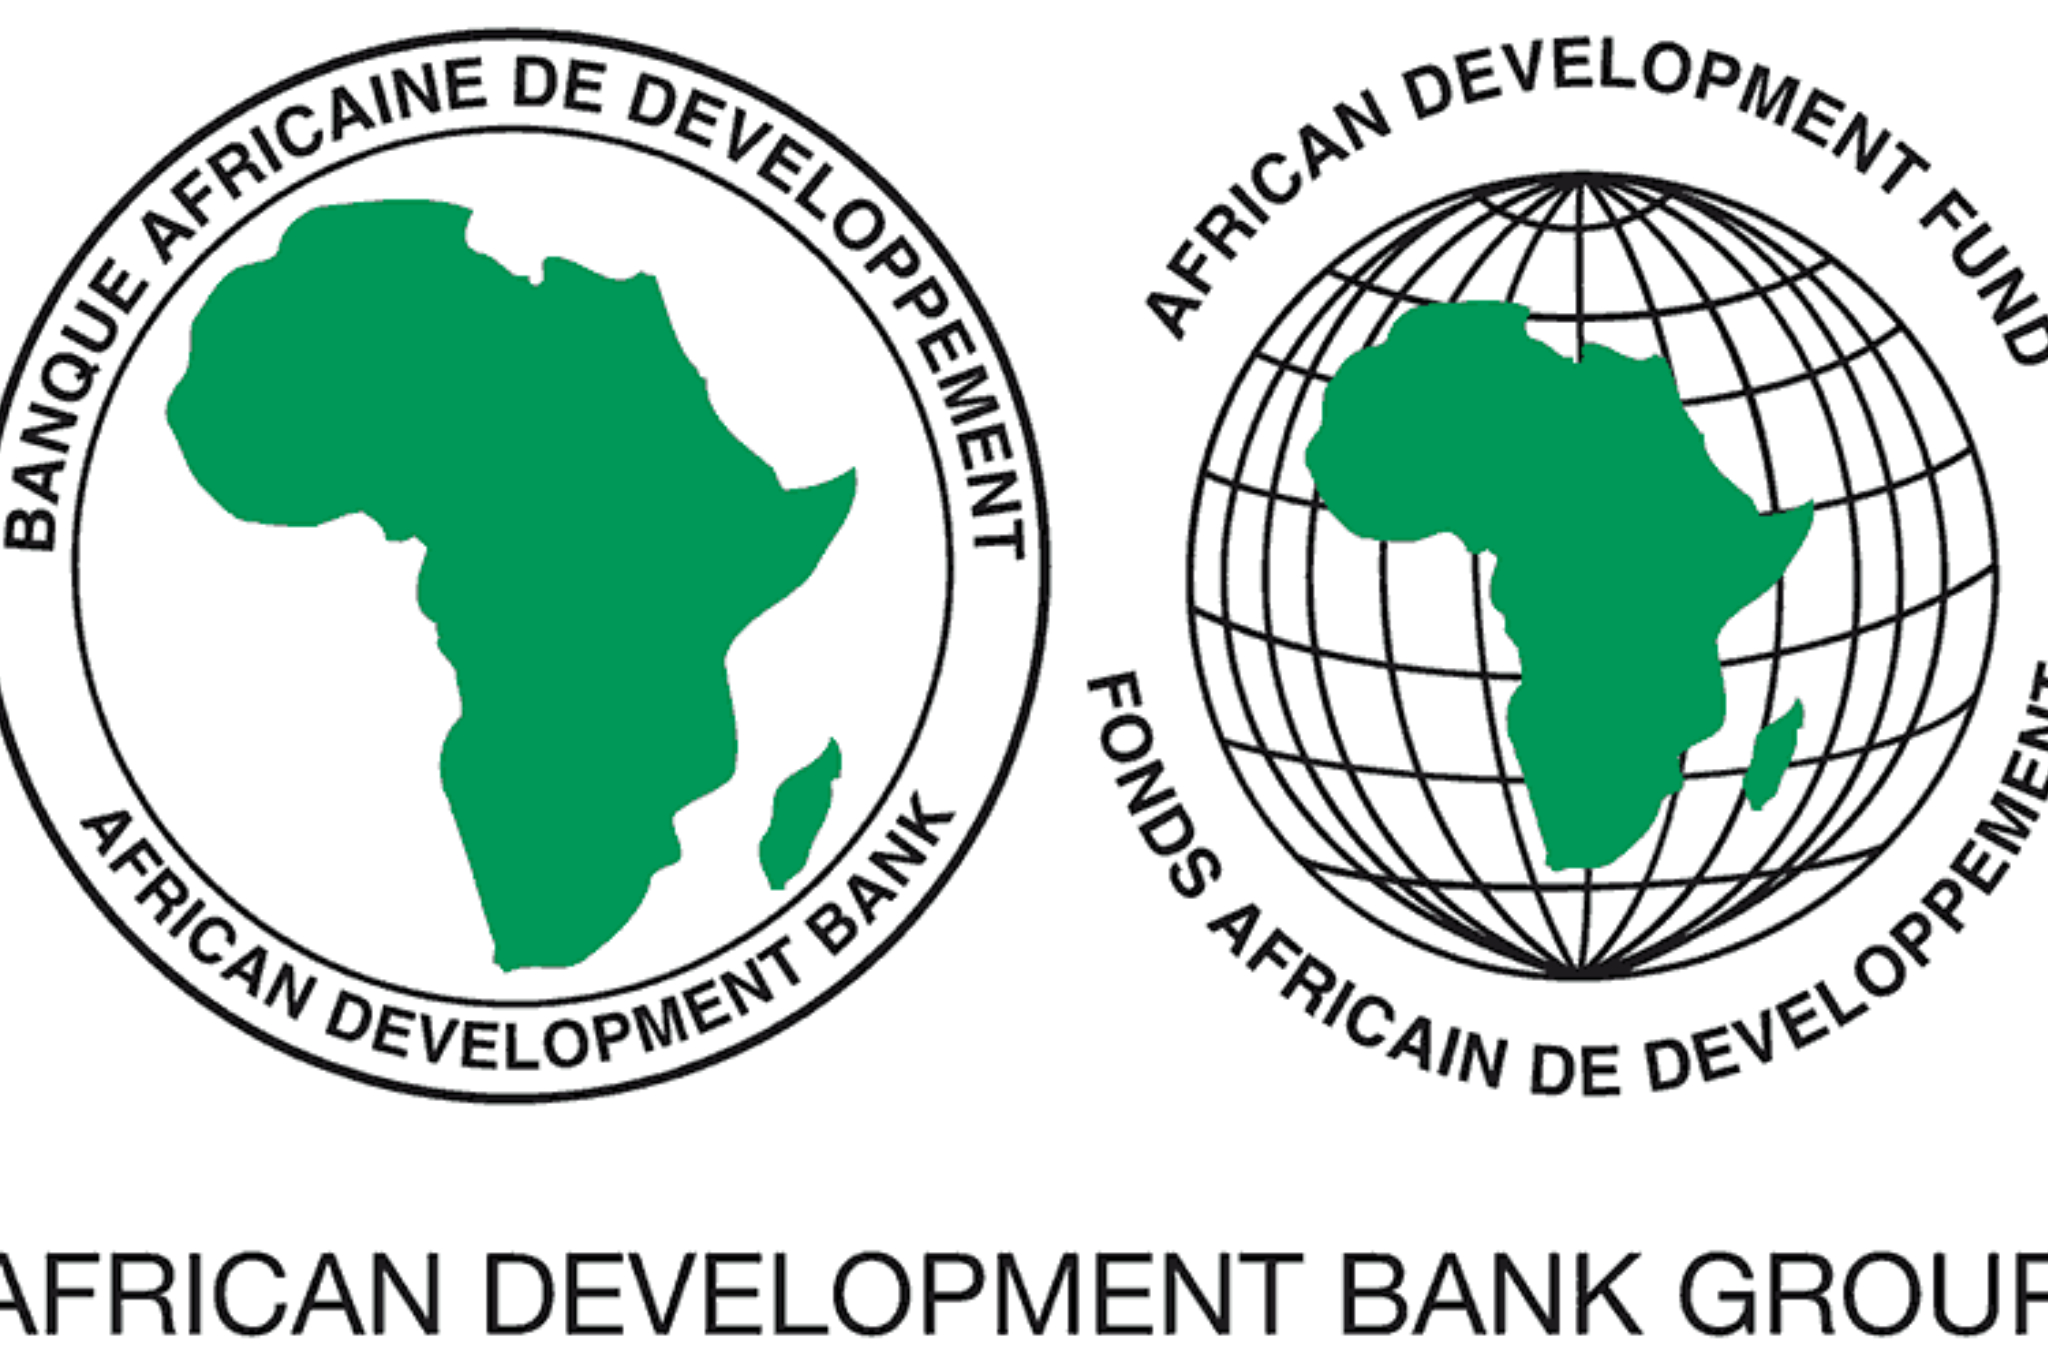 African Development Bank Group Logo Vector